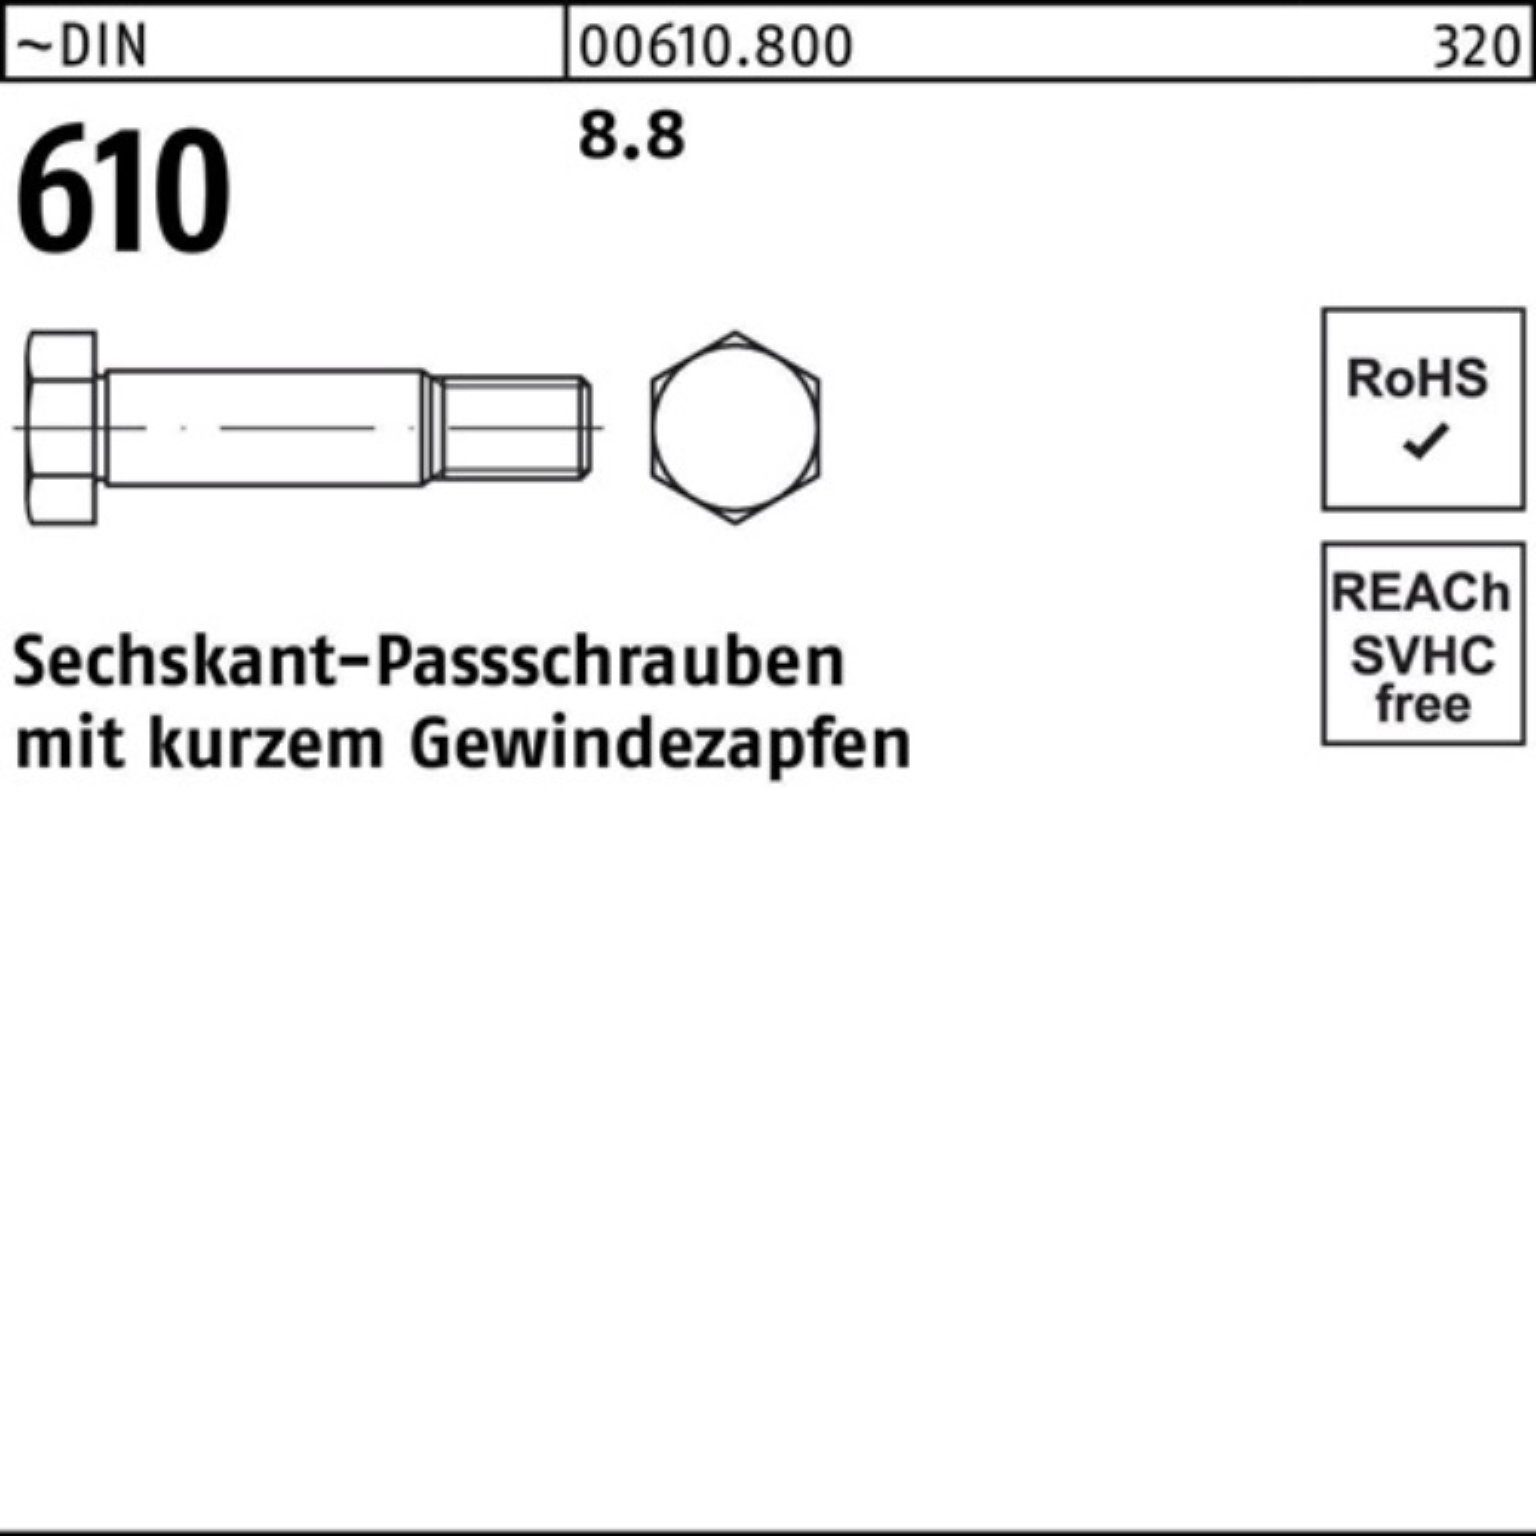 Sechskantpassschraube 100er 610 kurzem Reyher Schraube M14x DIN Gewindezapfen Pack 40